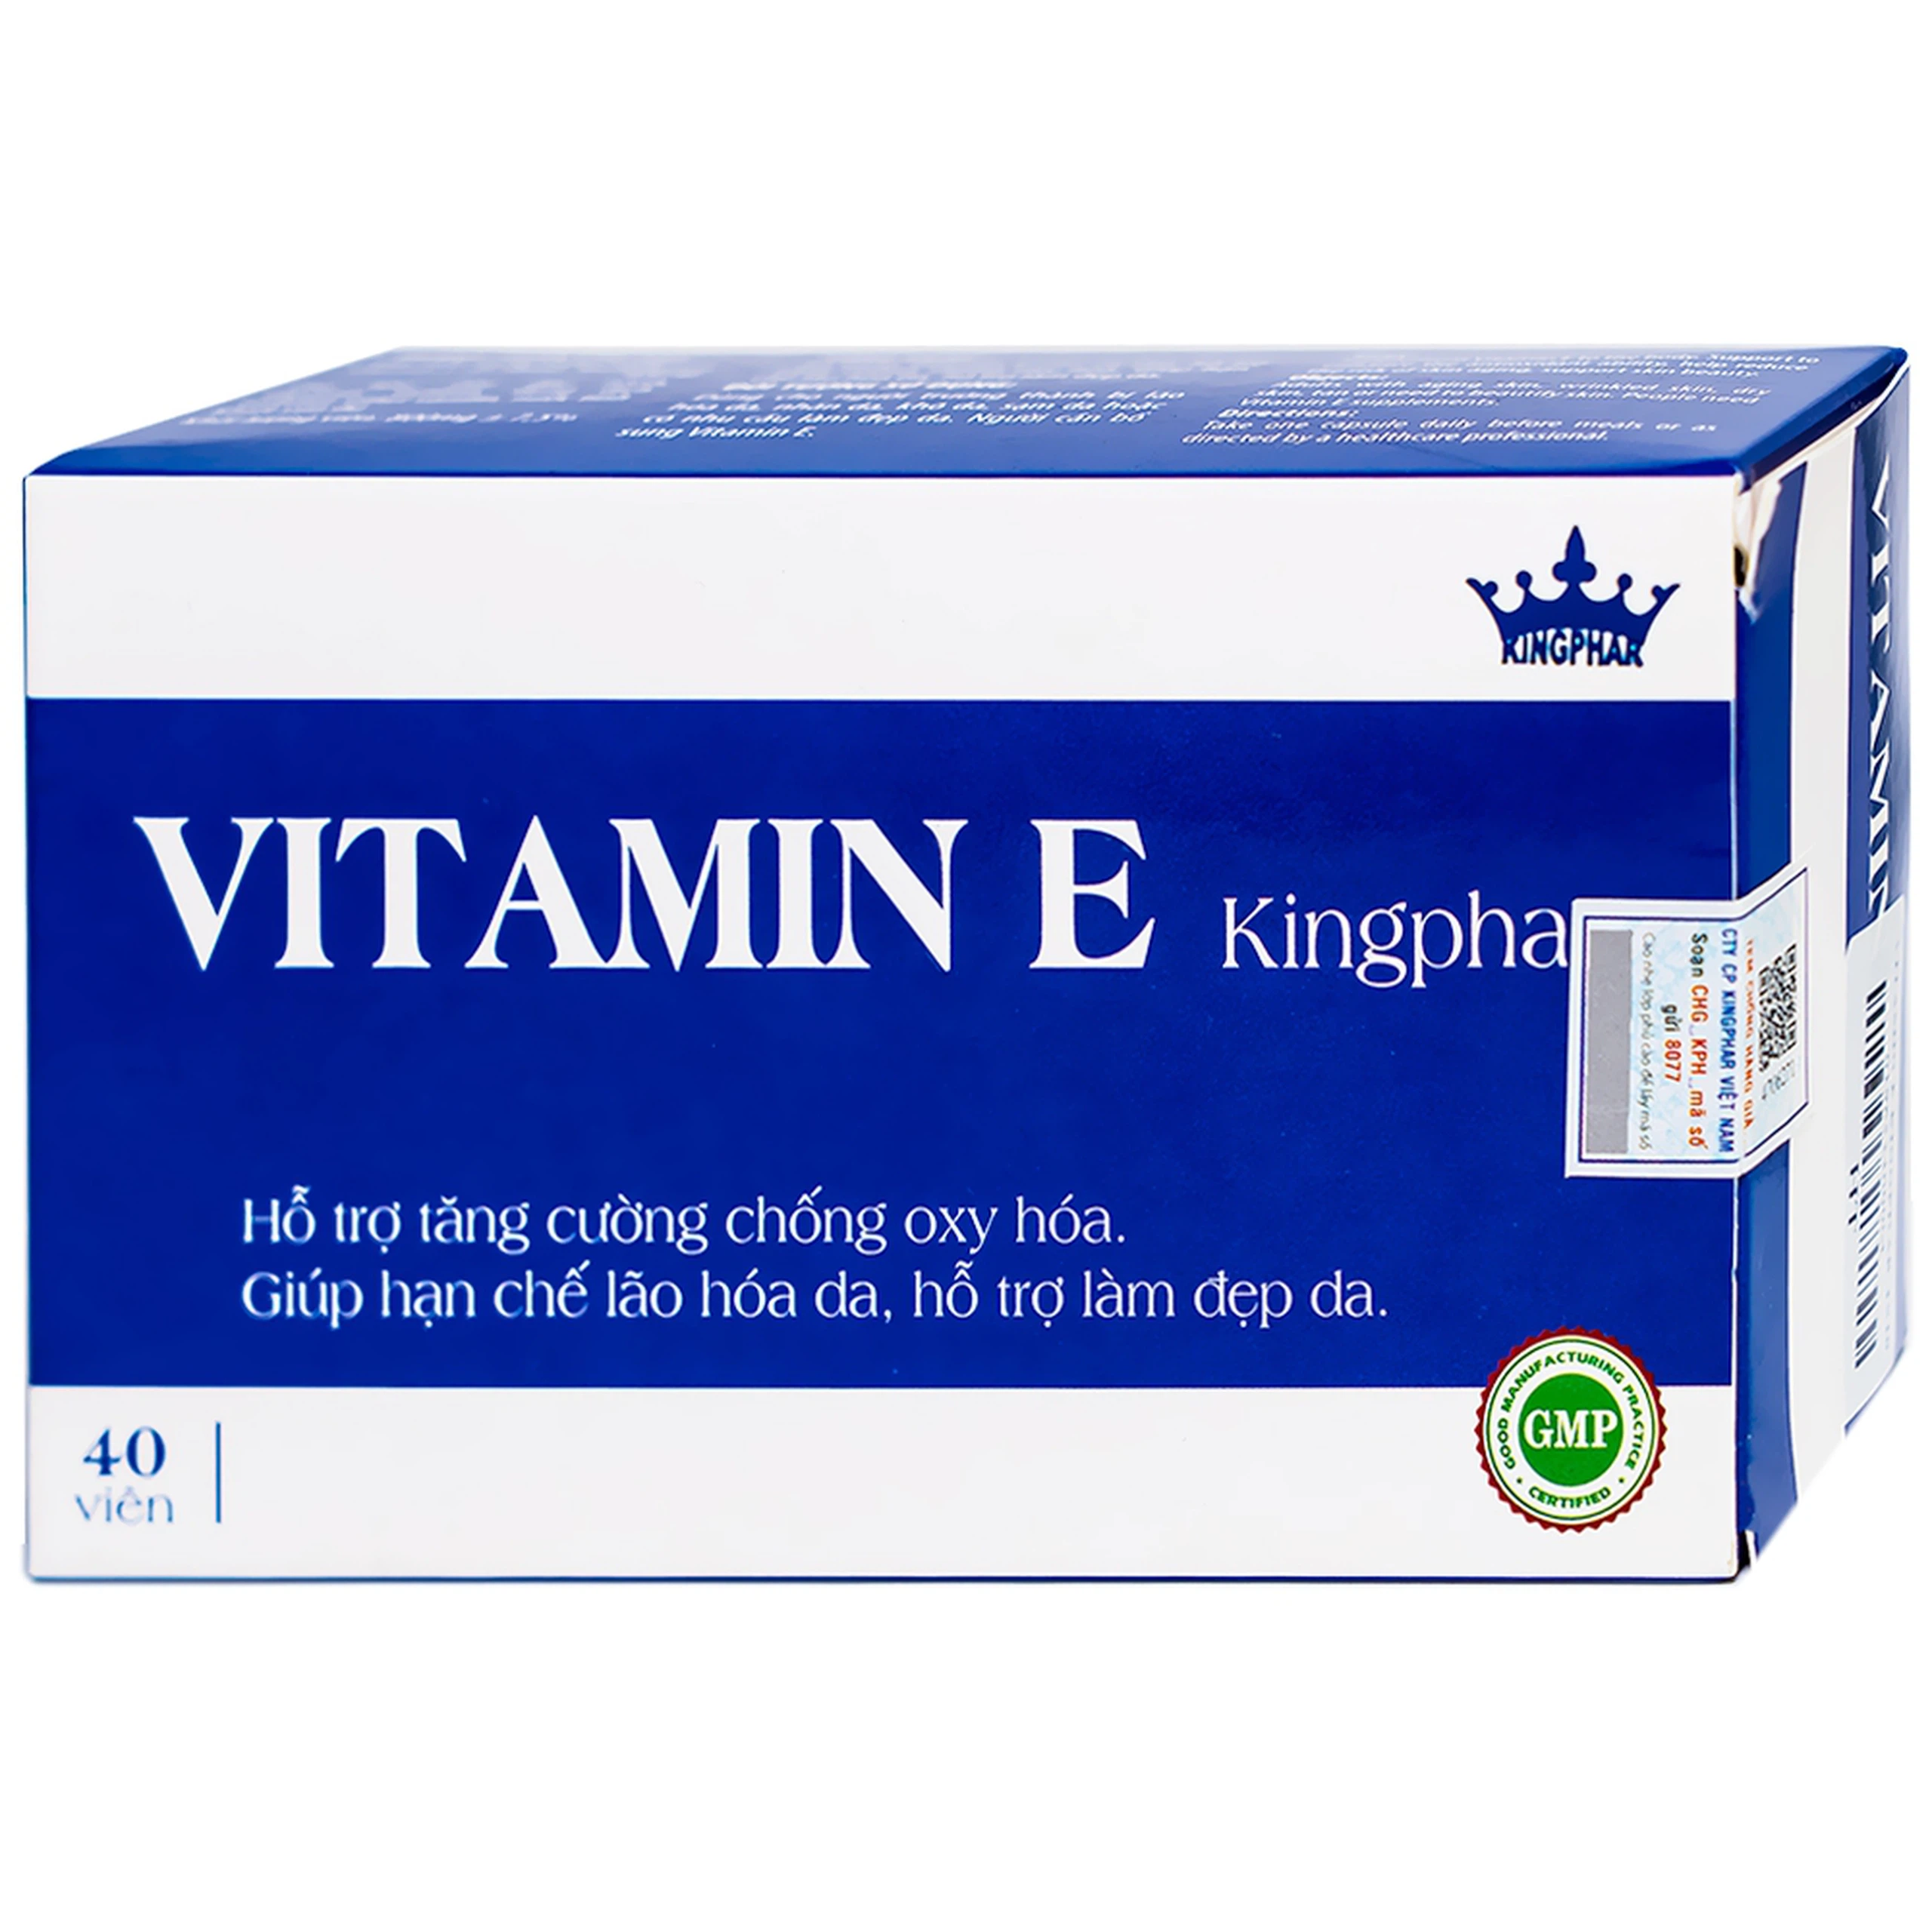 Viên uống Vitamin E Kingphar hỗ trợ tăng cường chống oxy hóa, hạn chế lão hóa da (4 vỉ x 10 viên) 